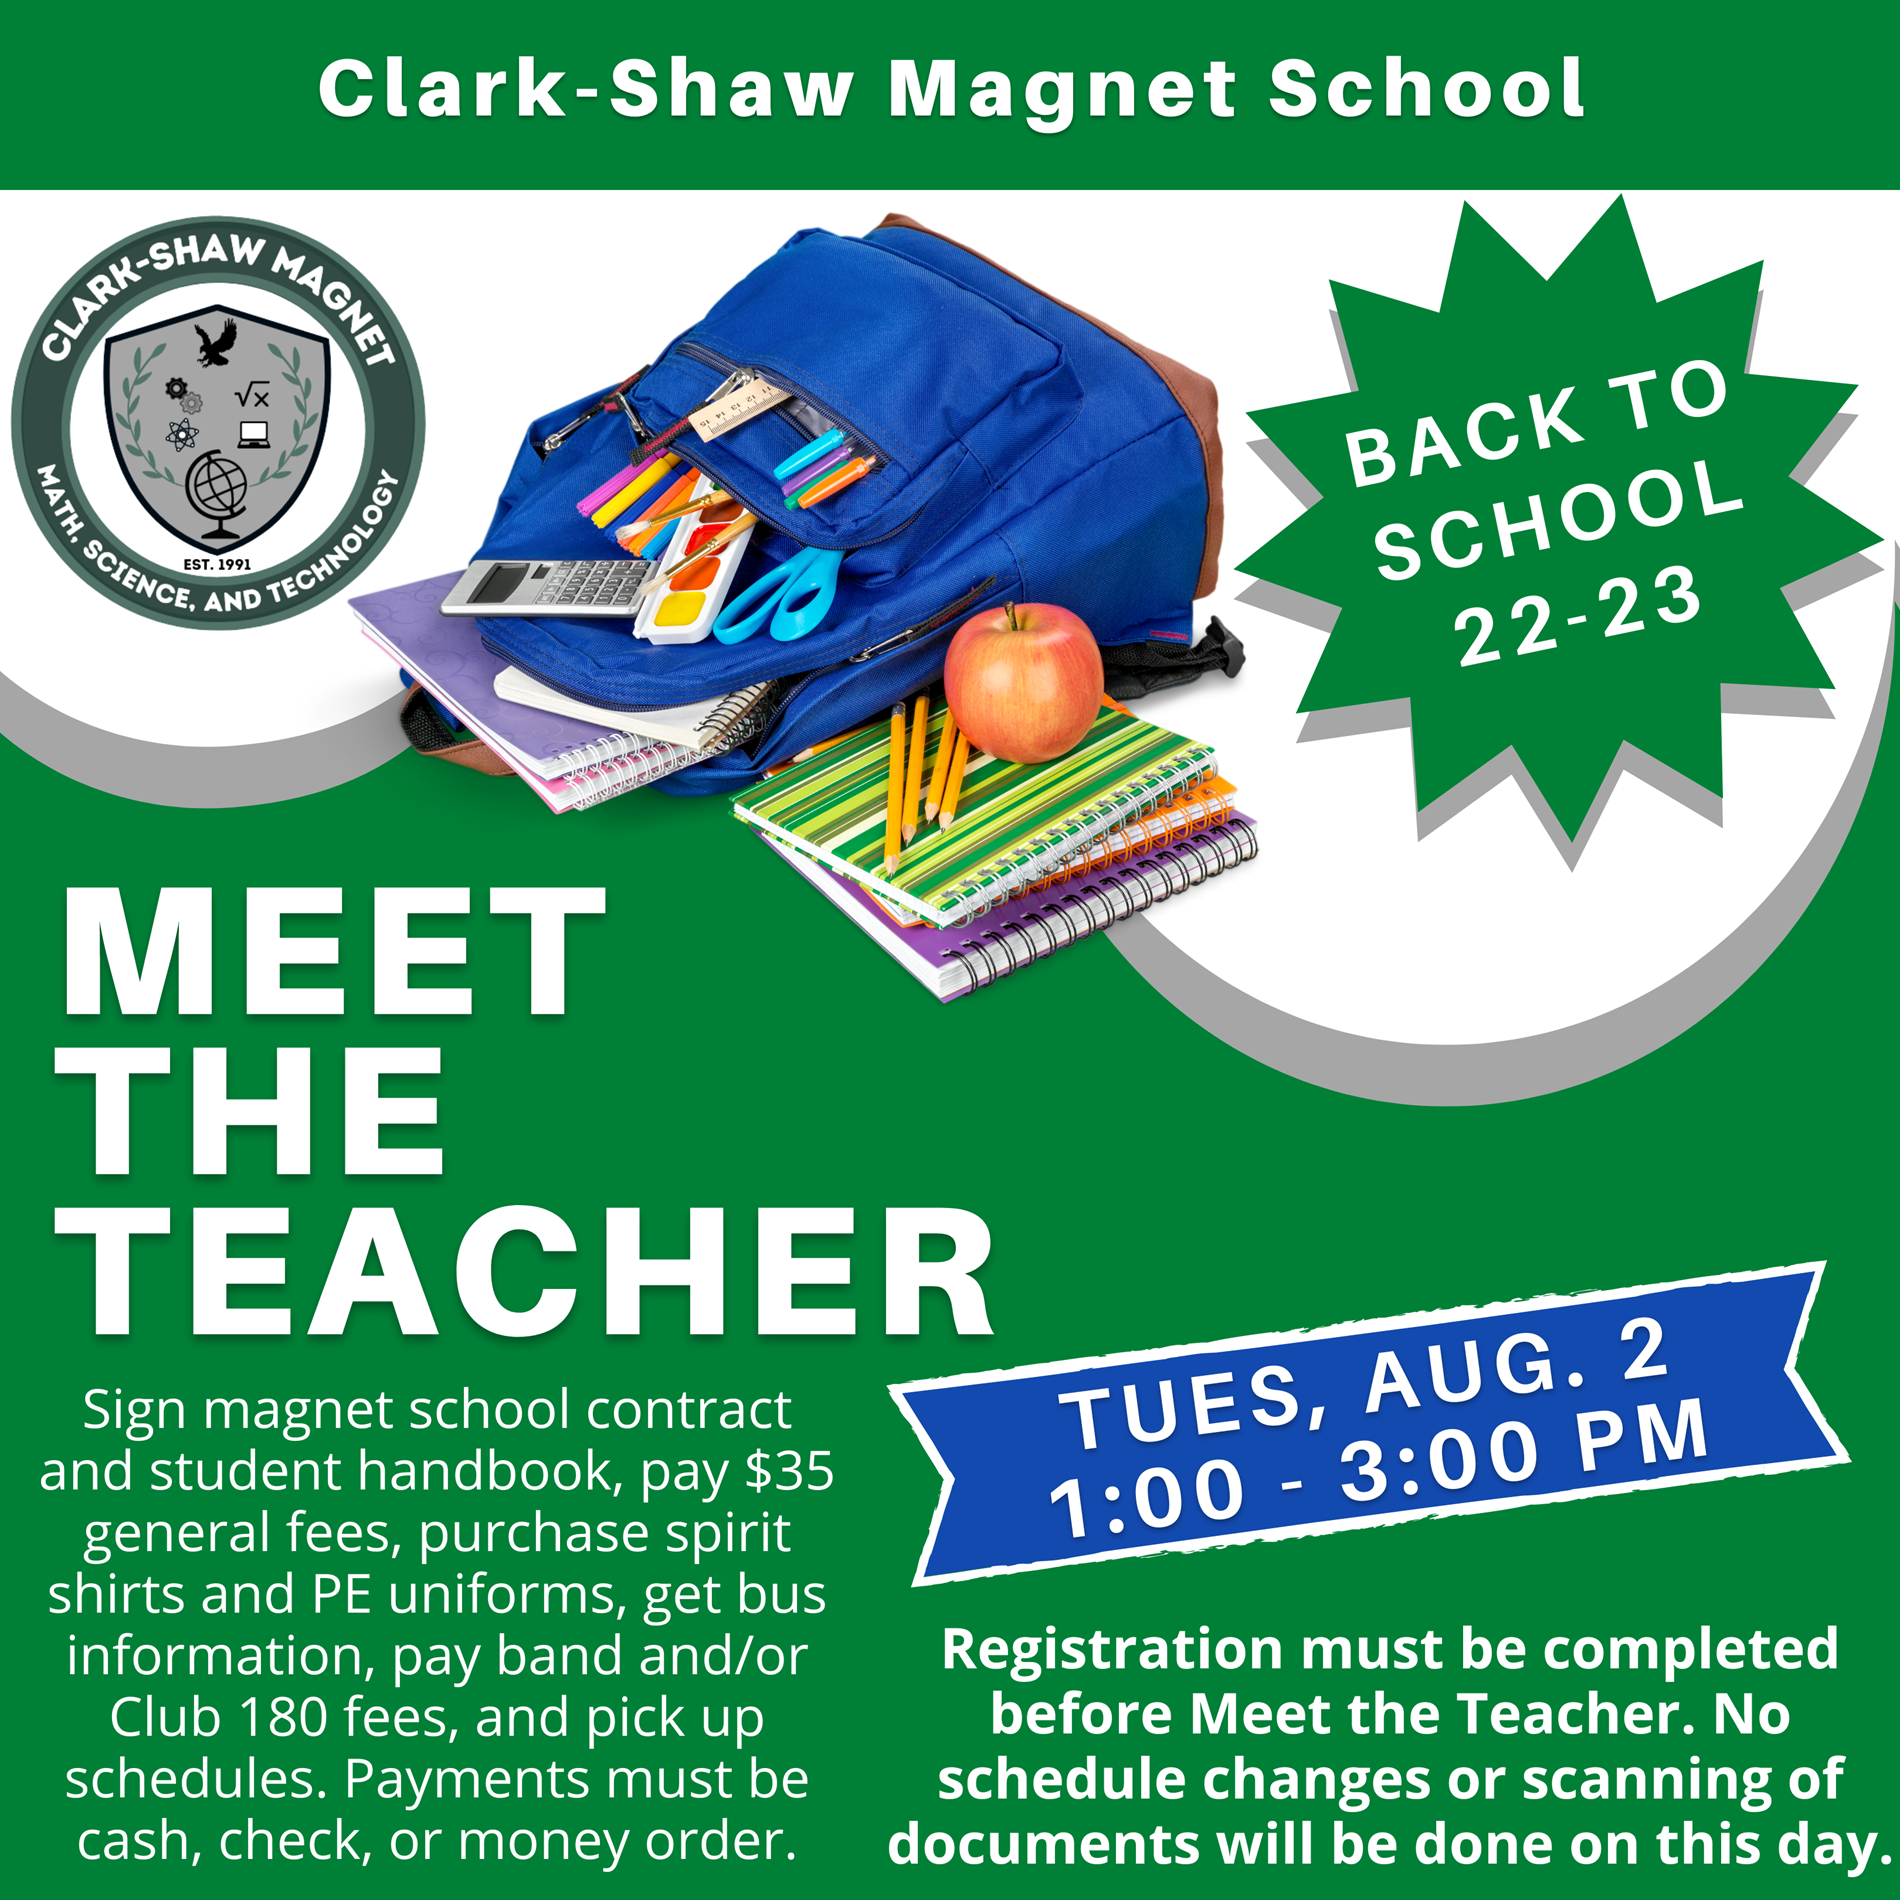 Meet the Teacher event August 2 1-3